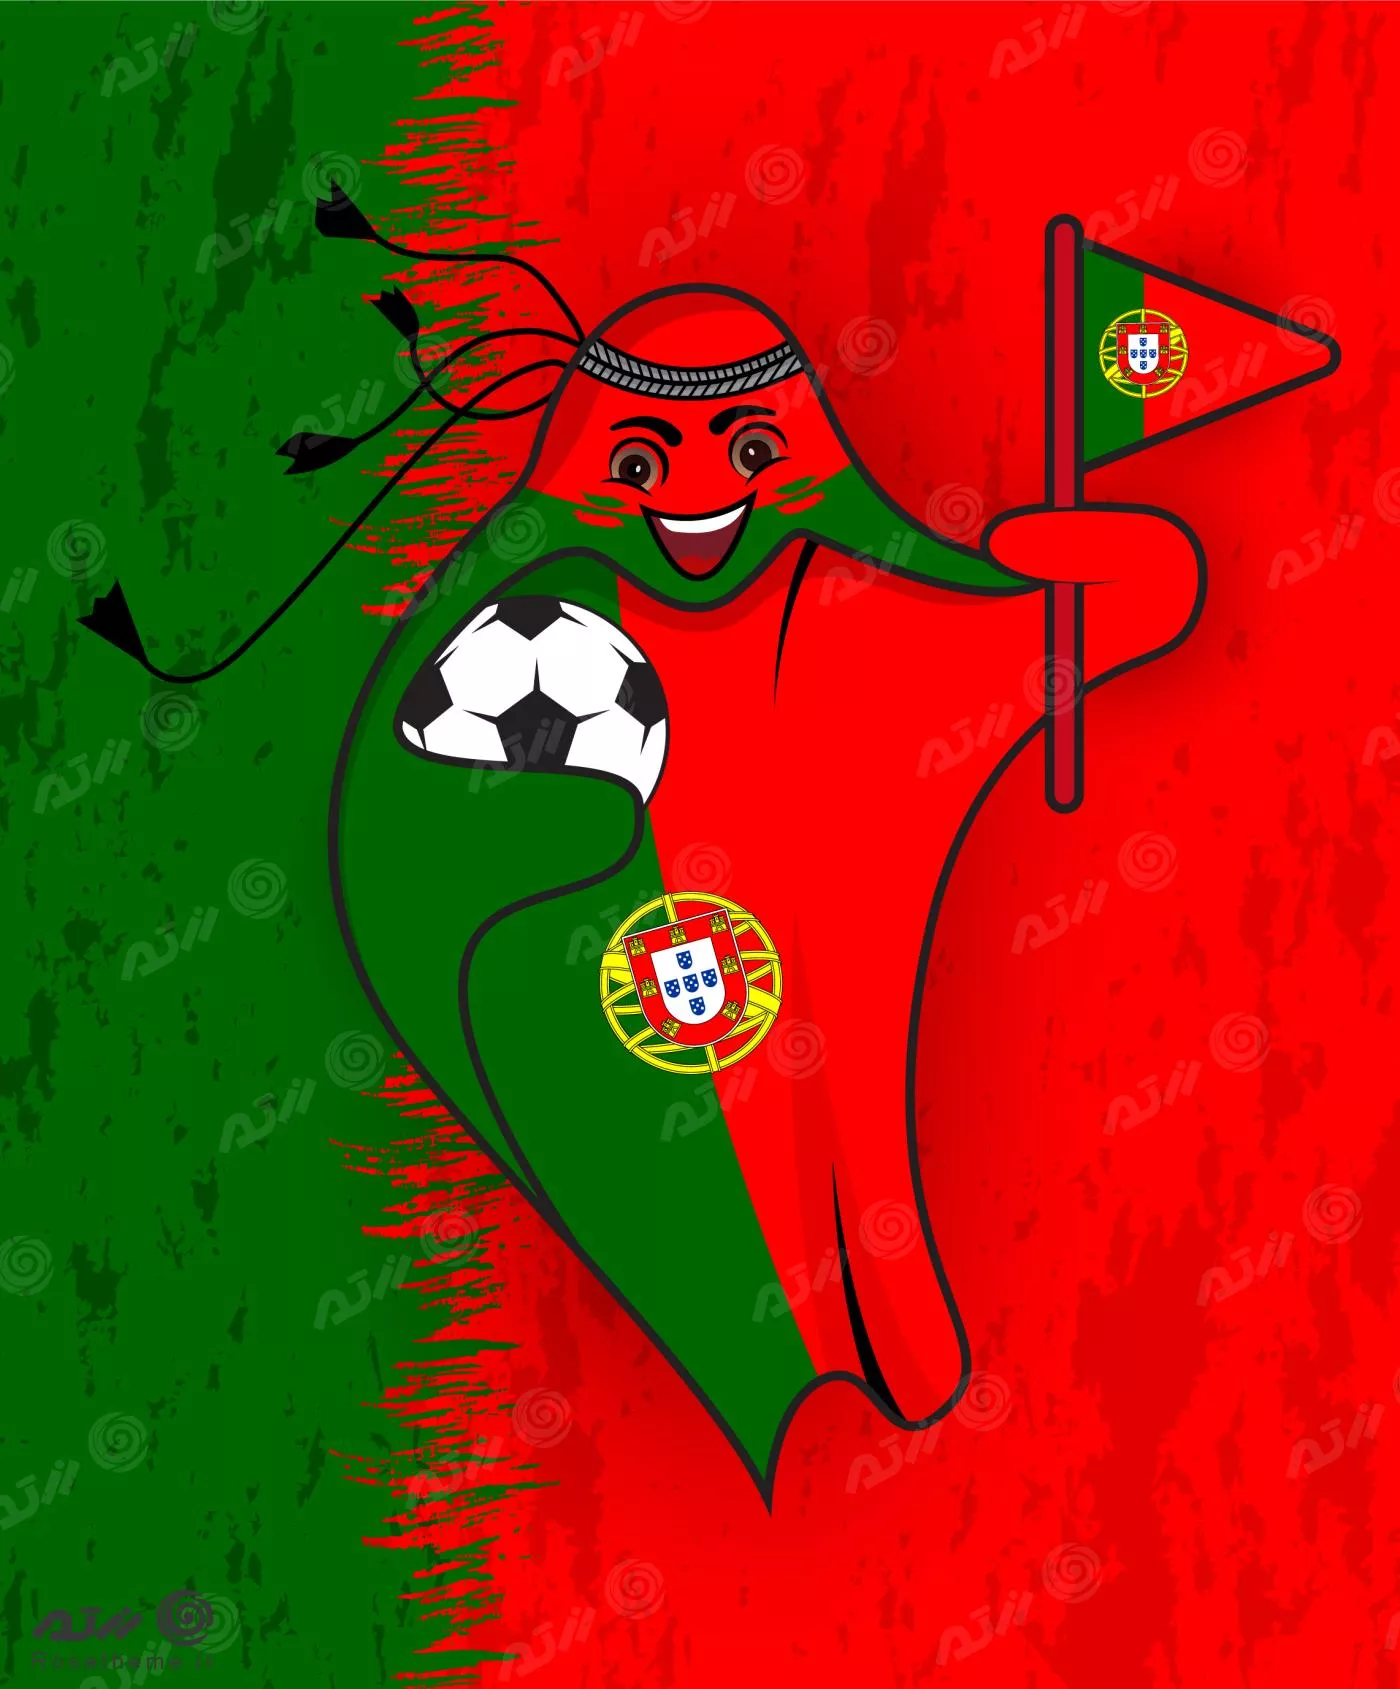 پرچم پرتغال در قالب نماد جام جهانی قطر 2022 به صورت وکتور EPS لایه باز  23358